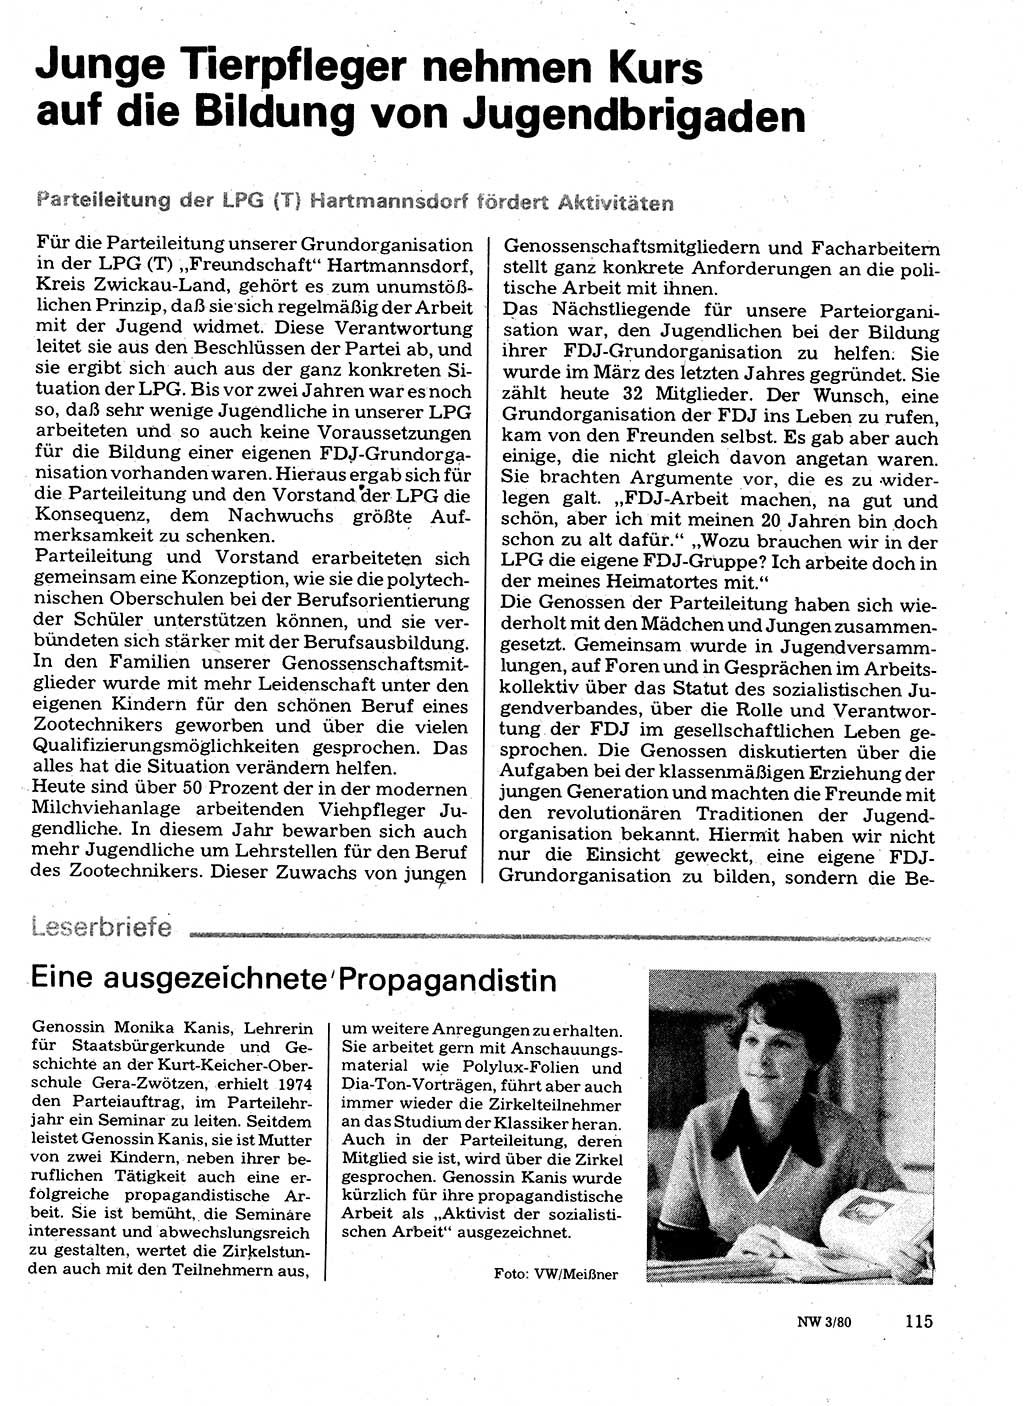 Neuer Weg (NW), Organ des Zentralkomitees (ZK) der SED (Sozialistische Einheitspartei Deutschlands) für Fragen des Parteilebens, 35. Jahrgang [Deutsche Demokratische Republik (DDR)] 1980, Seite 115 (NW ZK SED DDR 1980, S. 115)